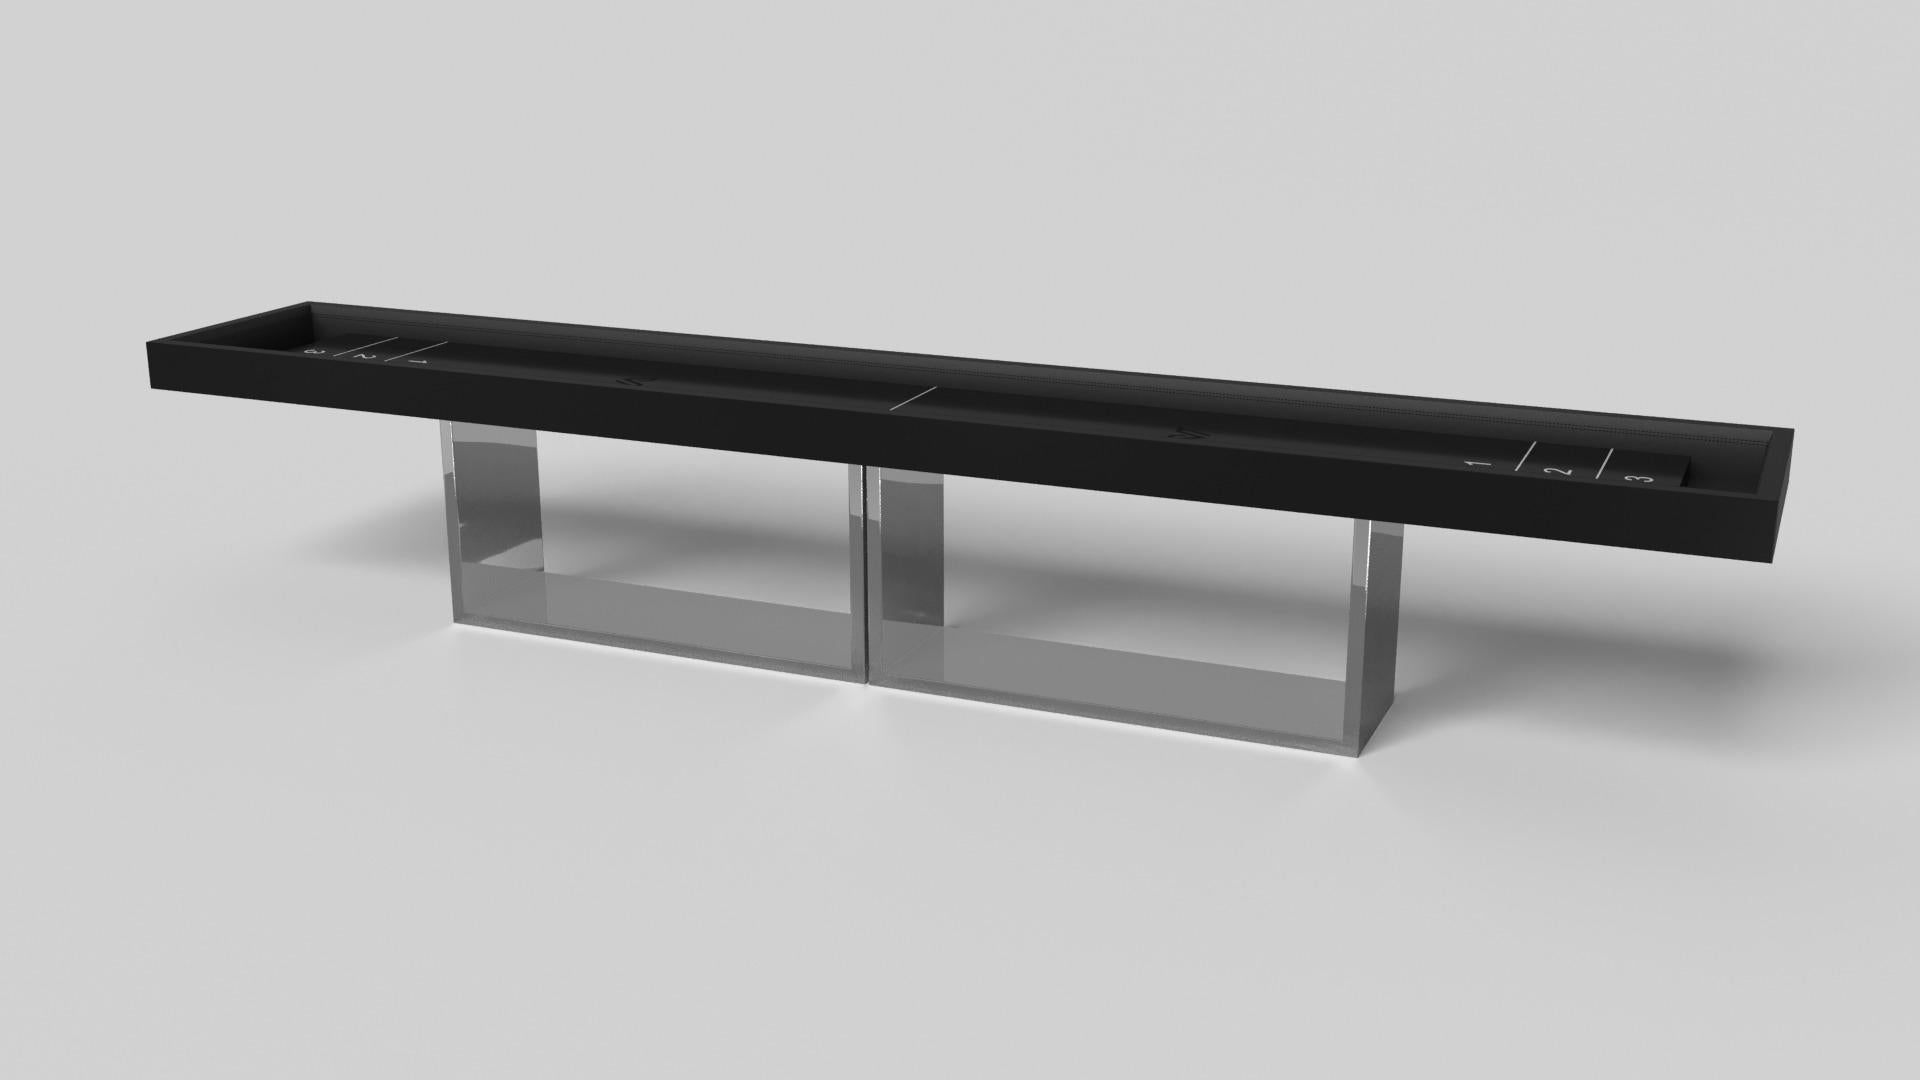 Soutenue par deux socles rectangulaires ouverts en guise de base, cette table de shuffleboard fabriquée à la main est moderne et minimaliste avec sa combinaison de formes simples et géométriques. Vue de face, l'utilisation de l'espace négatif est